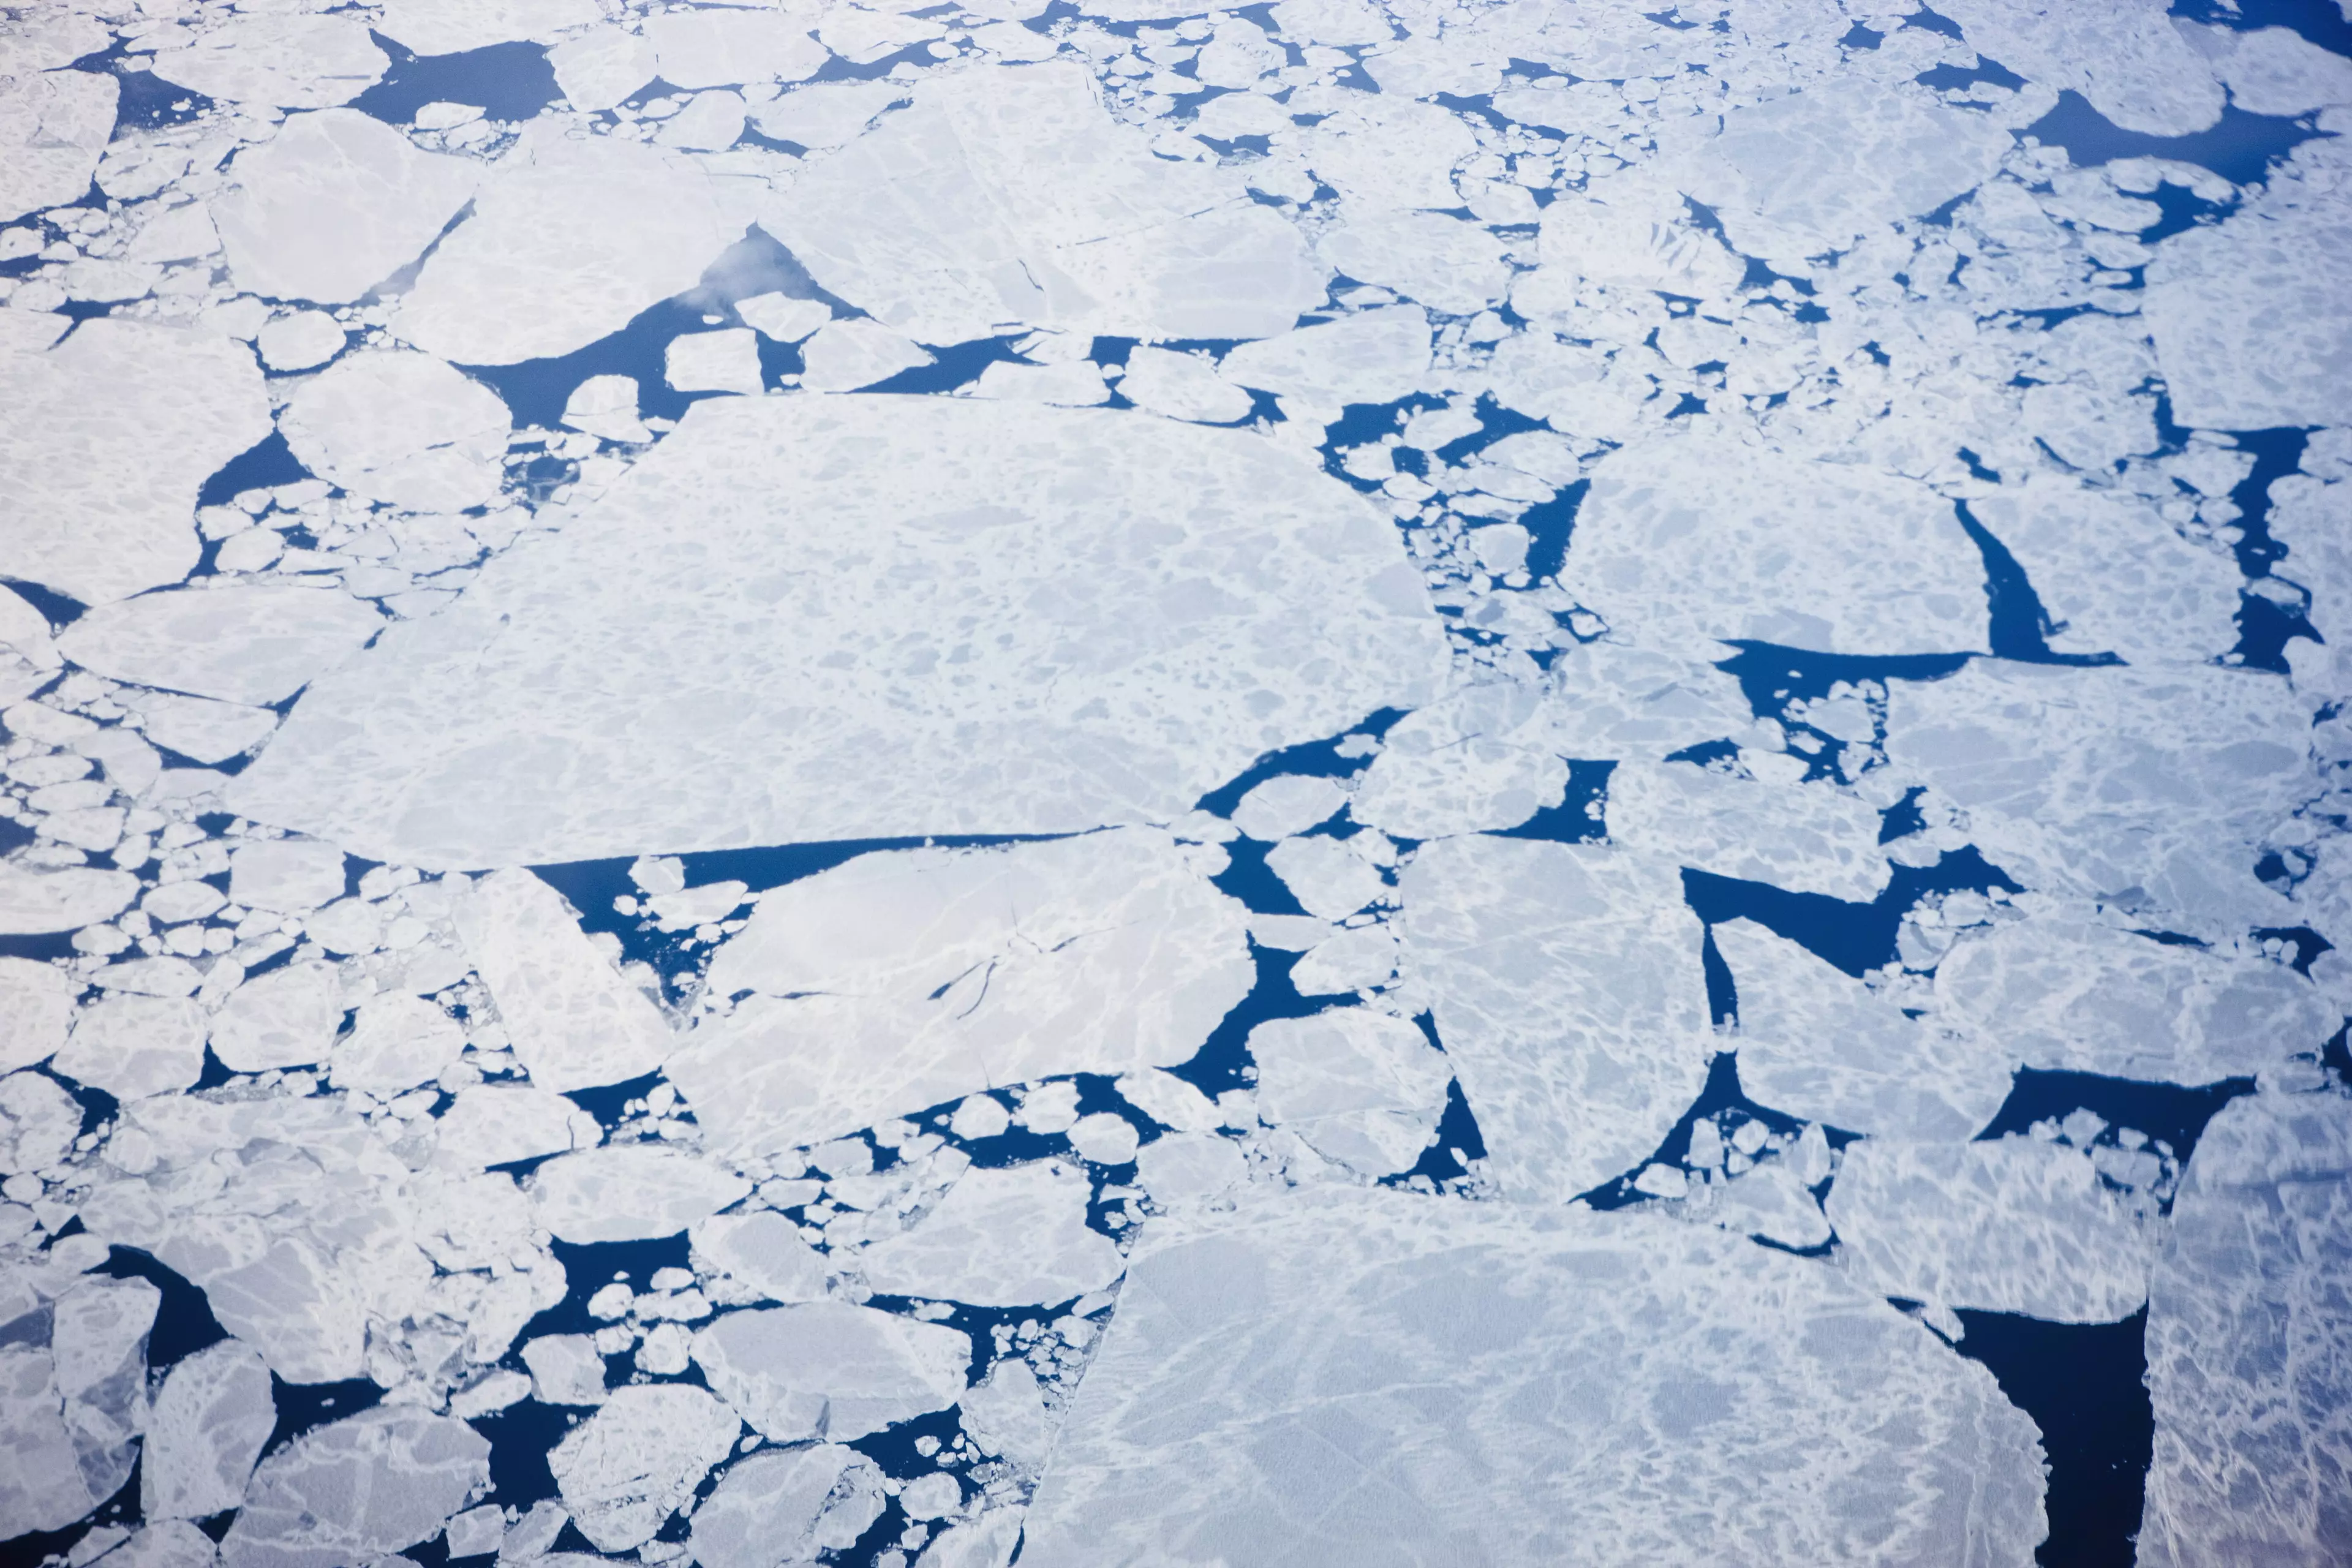 Sea ice in winter back in 2008.